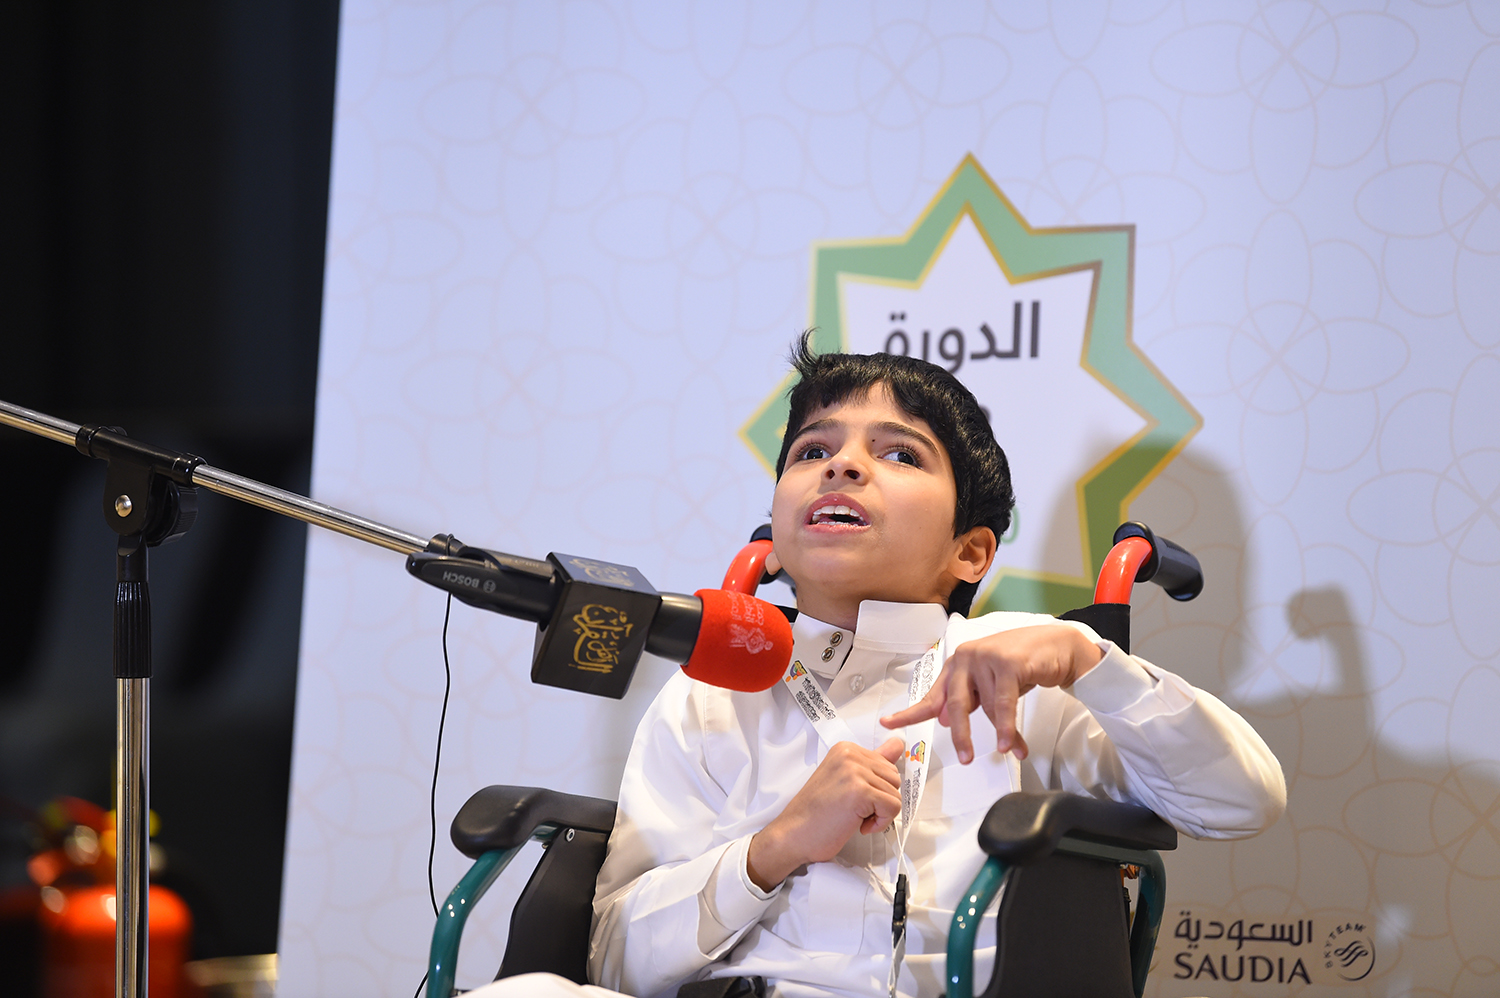 تفاعل مميز مع جائزة سلطان بن سلمان لحفظ القرآن للأطفال المعوقين